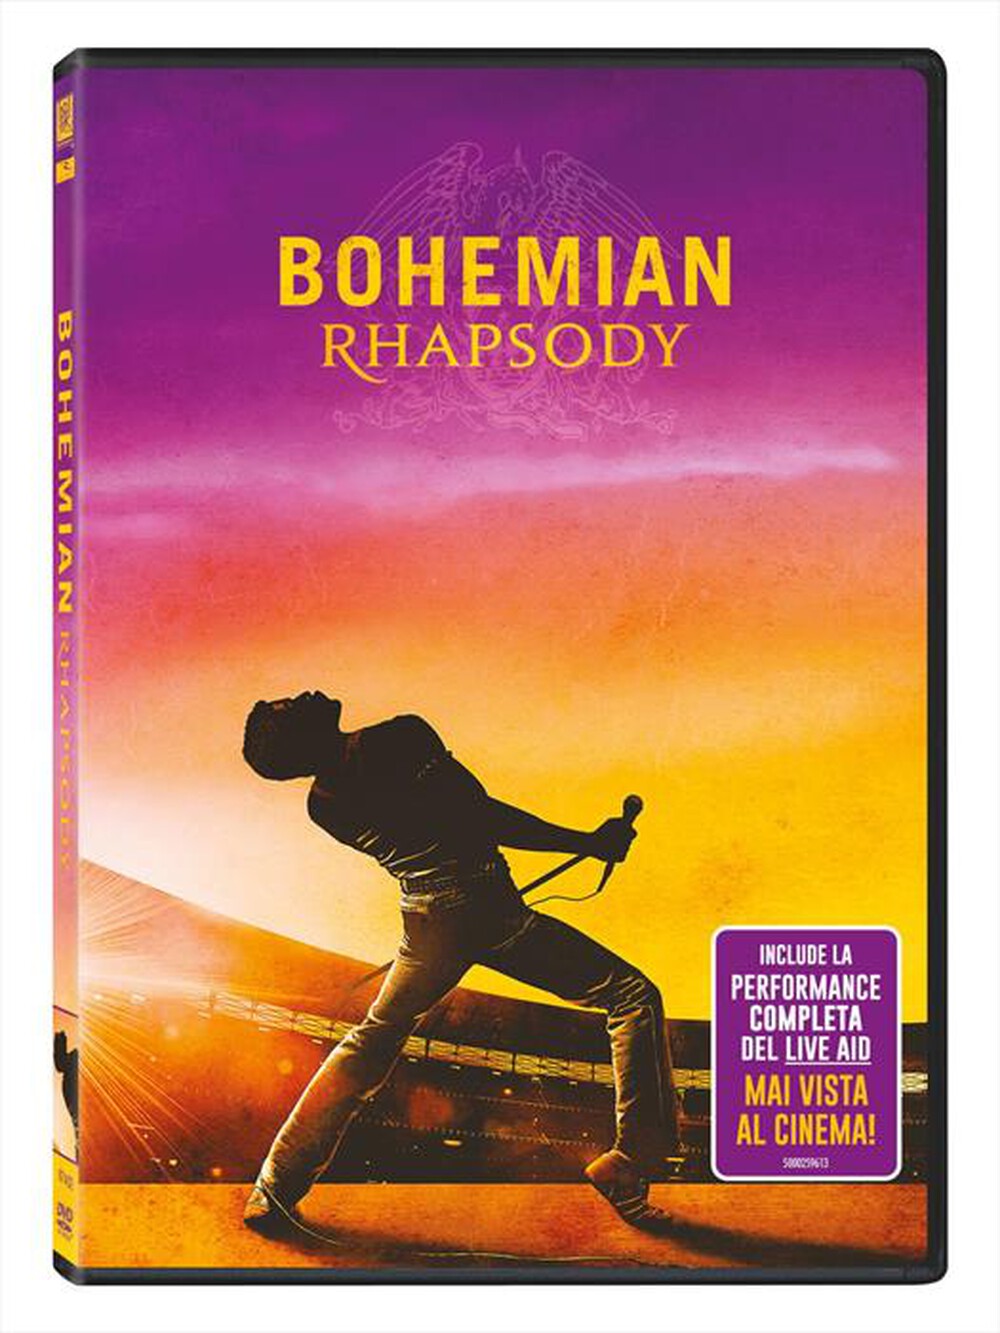 "WALT DISNEY - Bohemian Rhapsody"